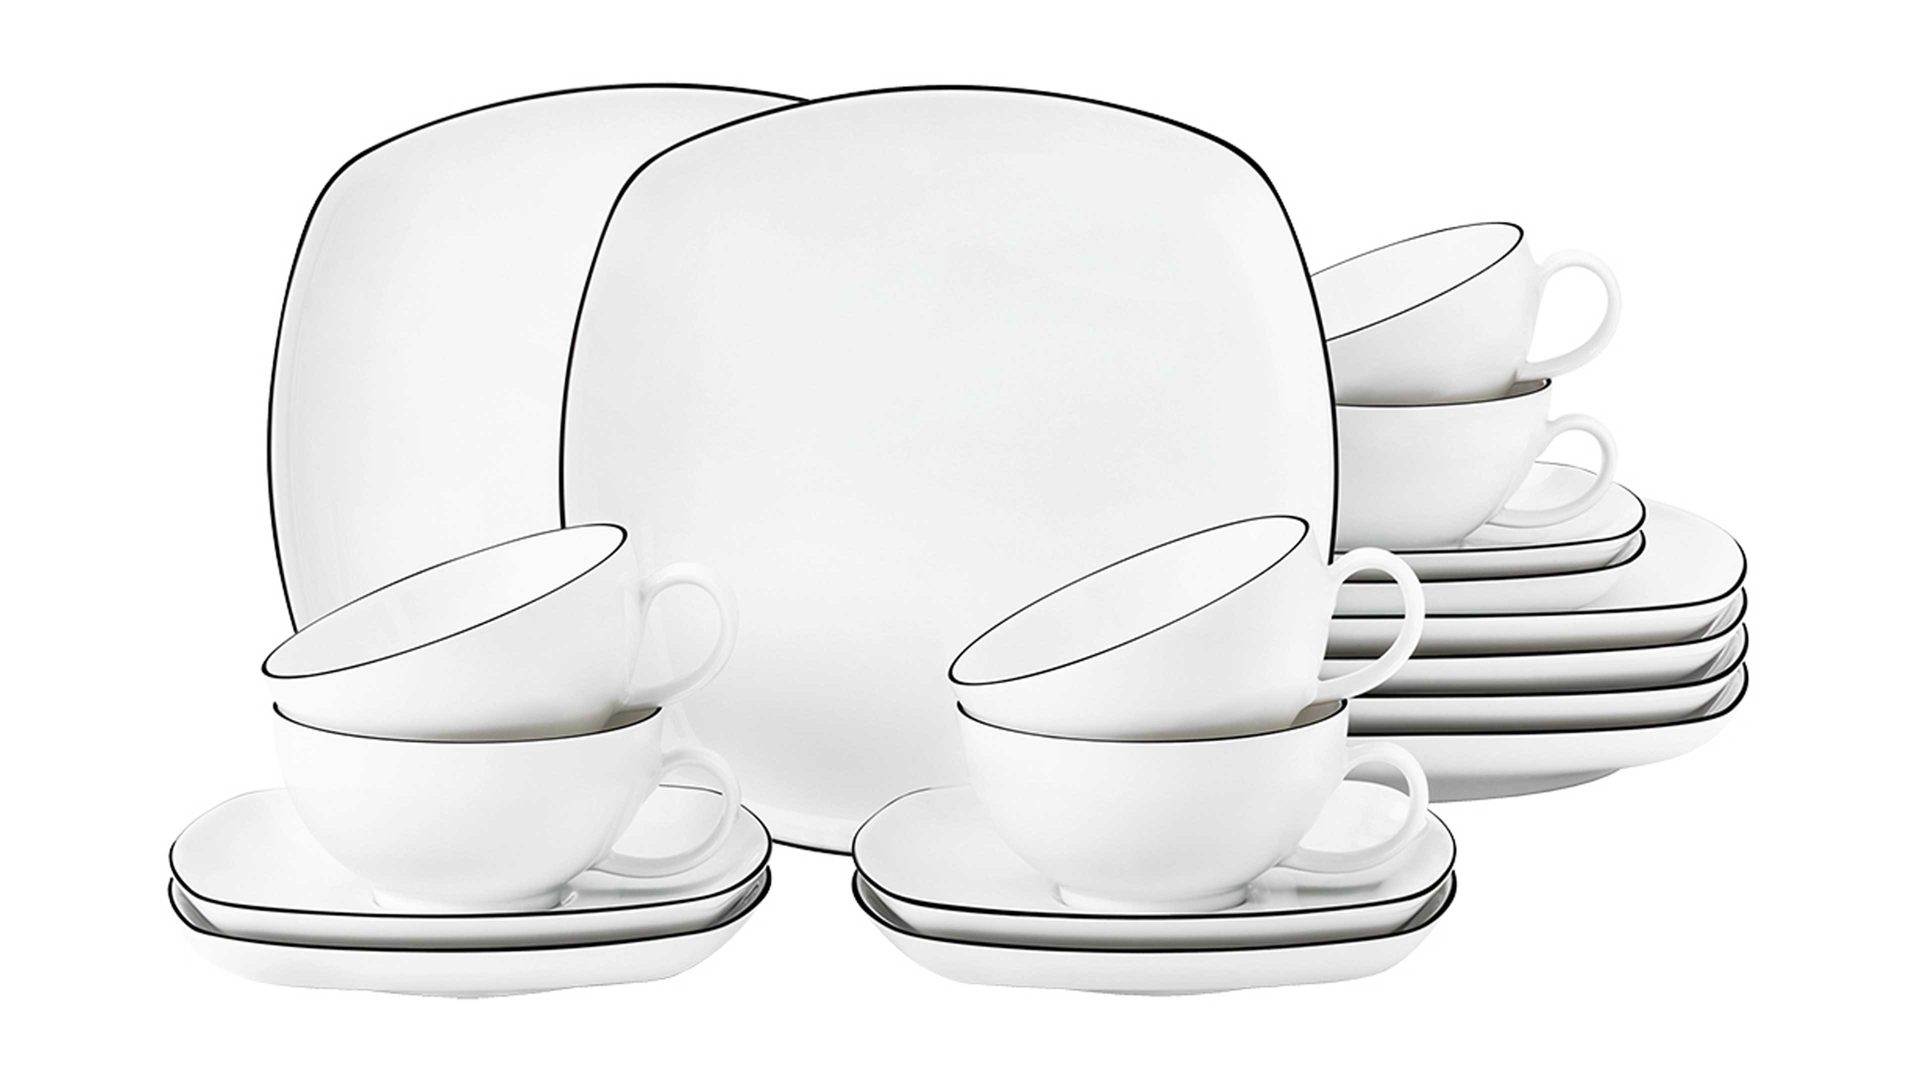 Teeservice Seltmann aus Porzellan in Weiß Seltmann Teeservice Lido mit eckigen Tellern weißes Porzellan - 18-teilig, große Tassen